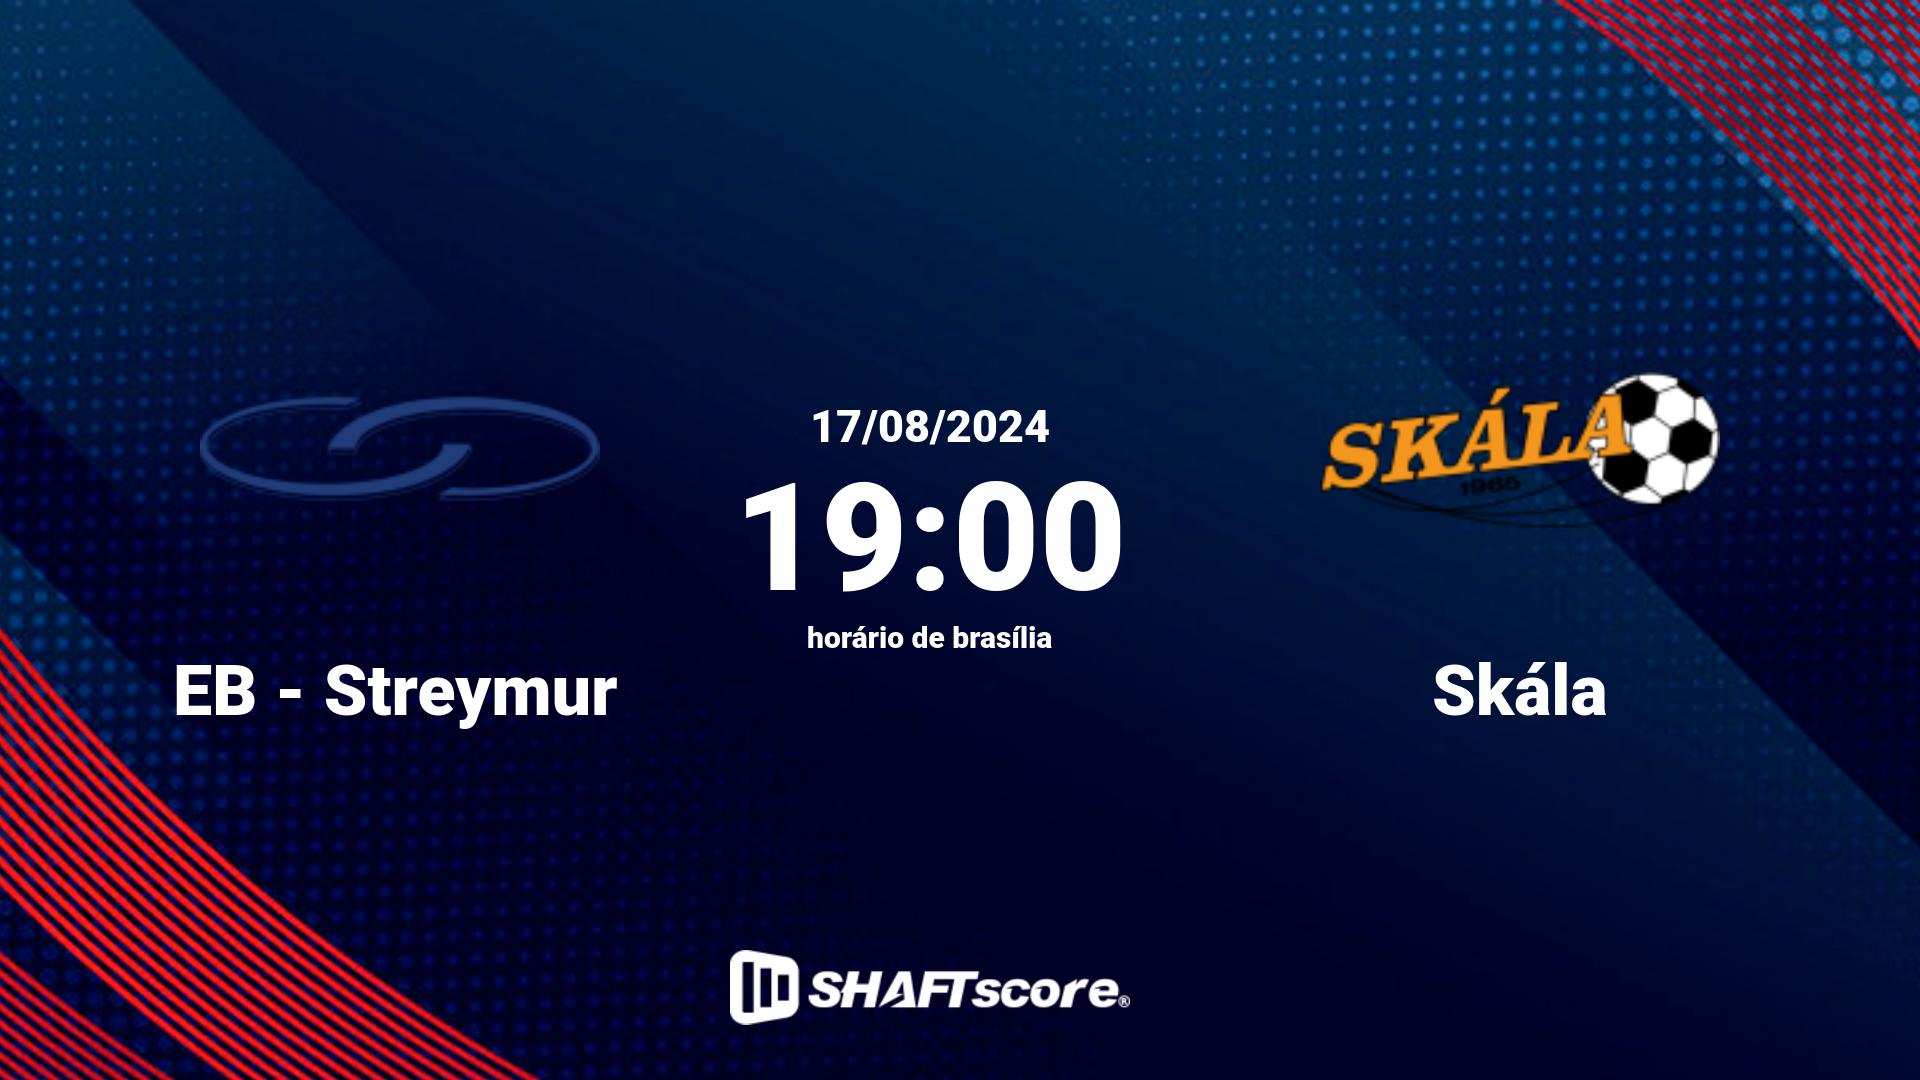 Estatísticas do jogo EB - Streymur vs Skála 17.08 19:00